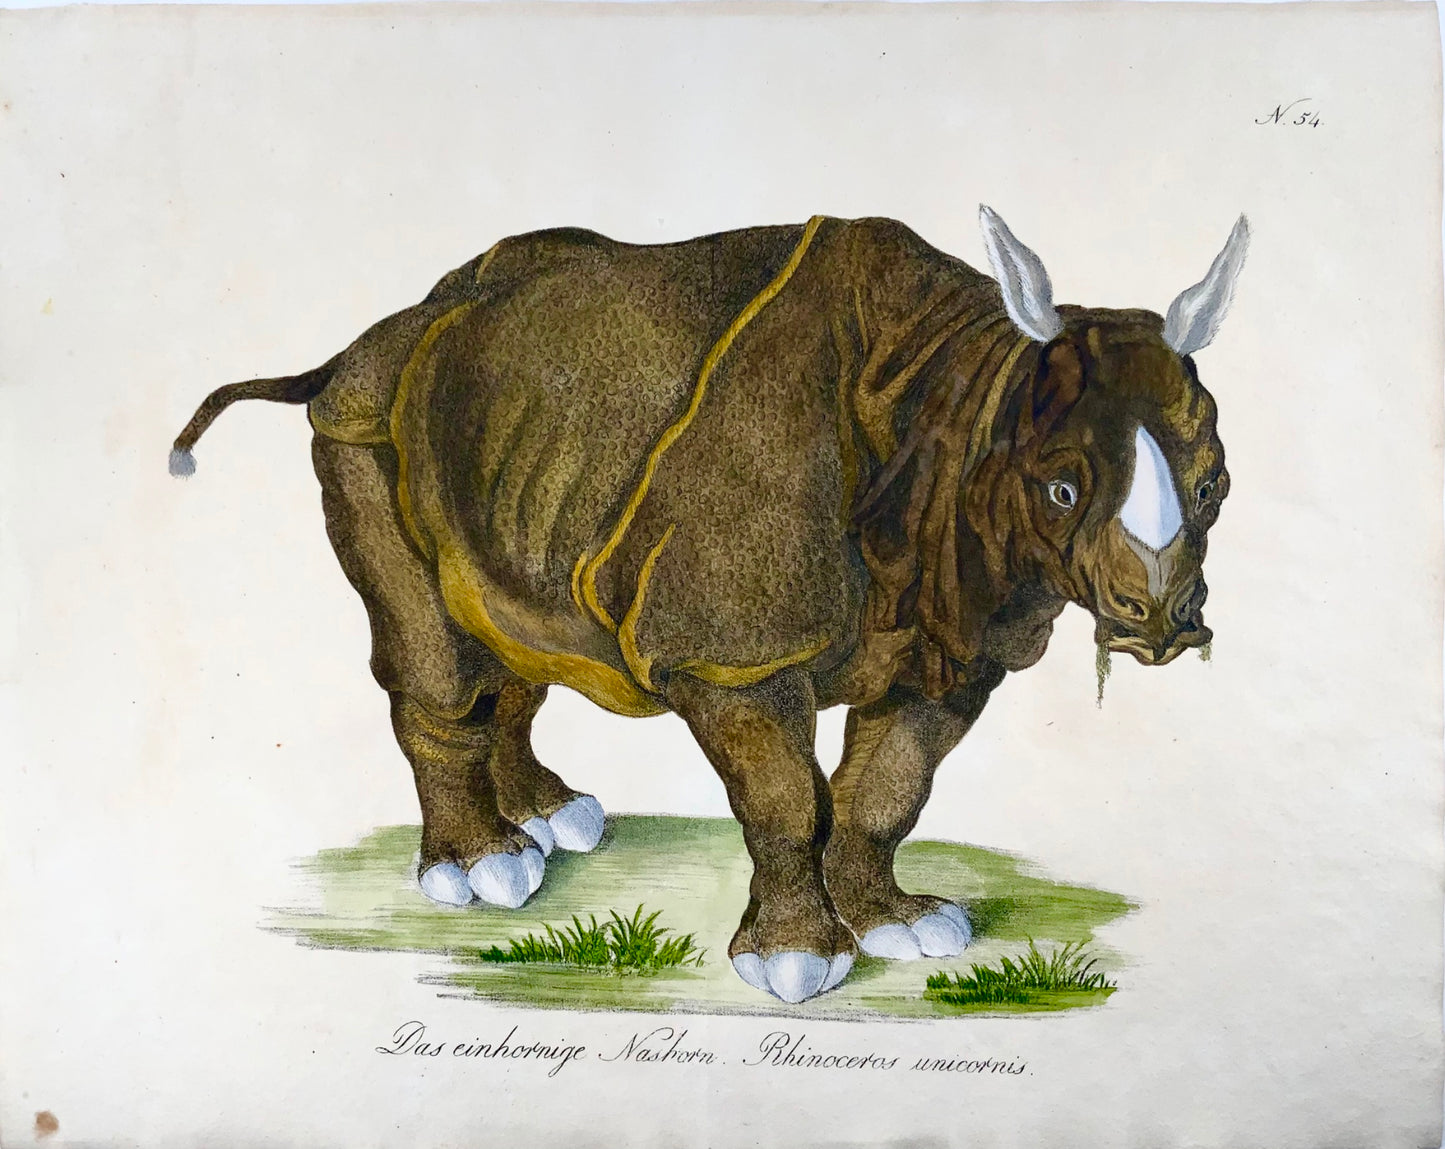 1816 Rhinocéros, Lutin. folio 42,5 cm, lithographie sur pierre incunable, couleur à la main